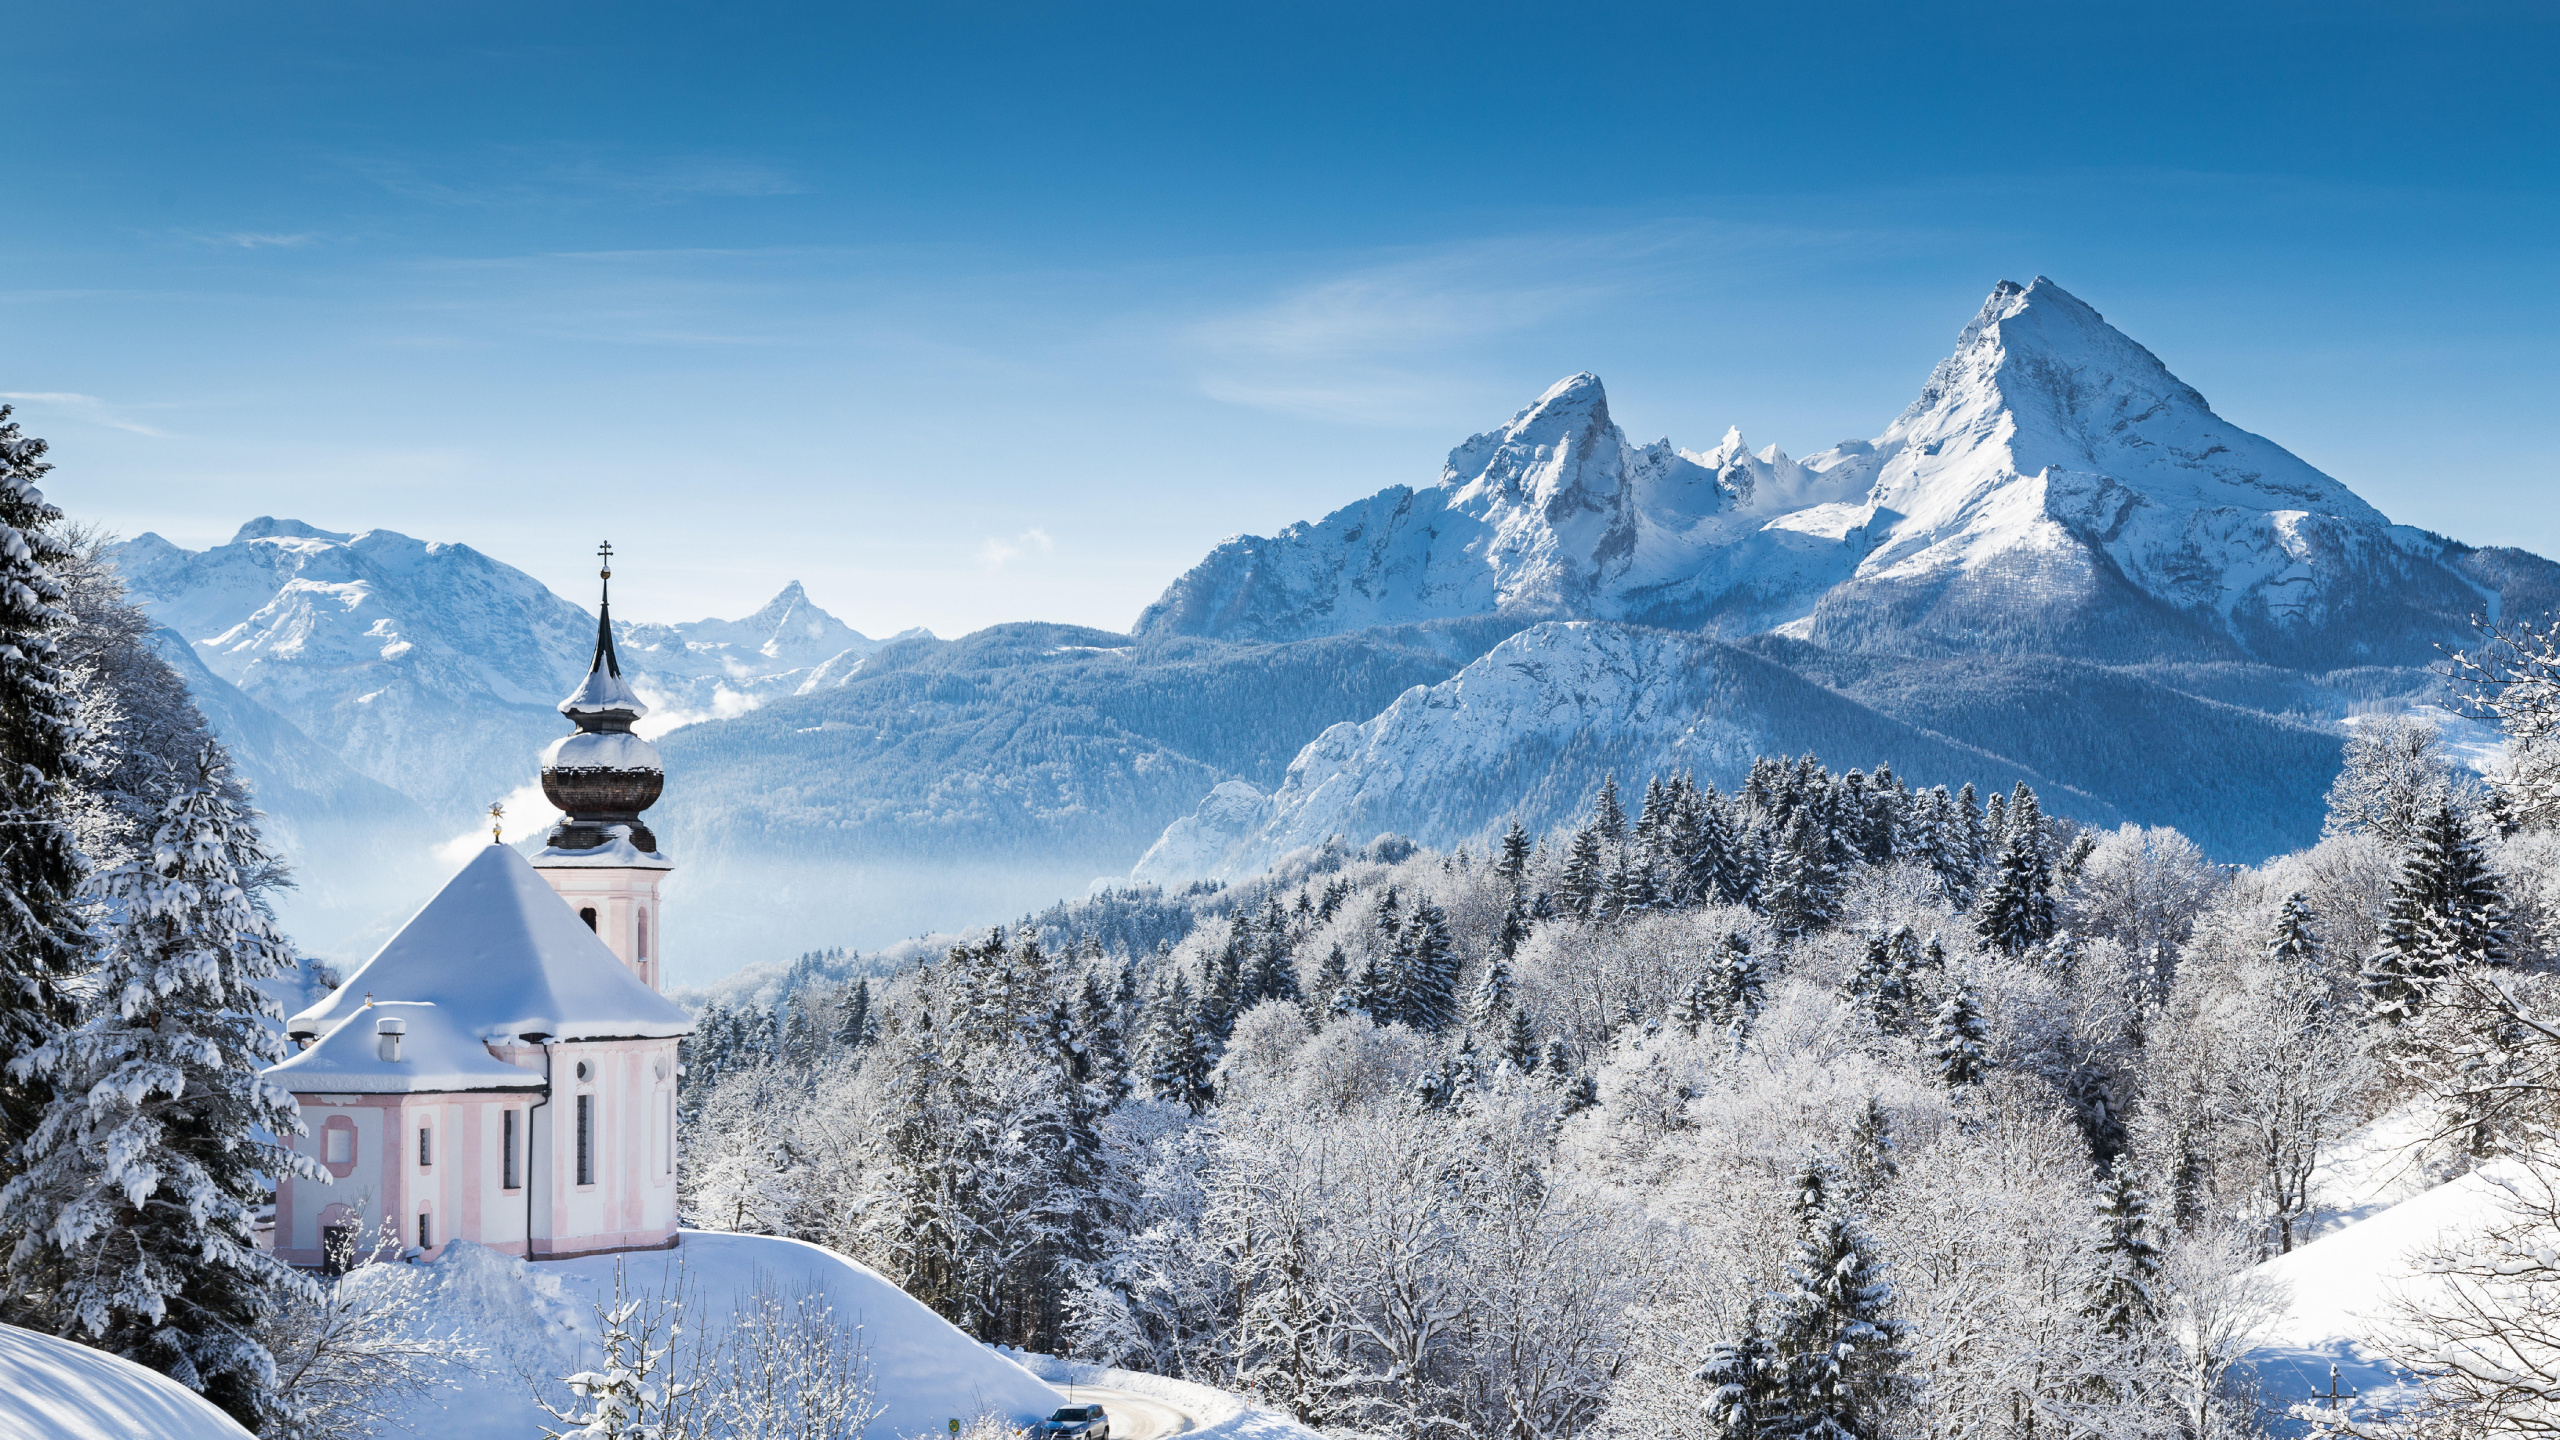 多山的地貌, 冬天, 山脉, 阿尔卑斯山, 安装的风景 壁纸 2560x1440 允许